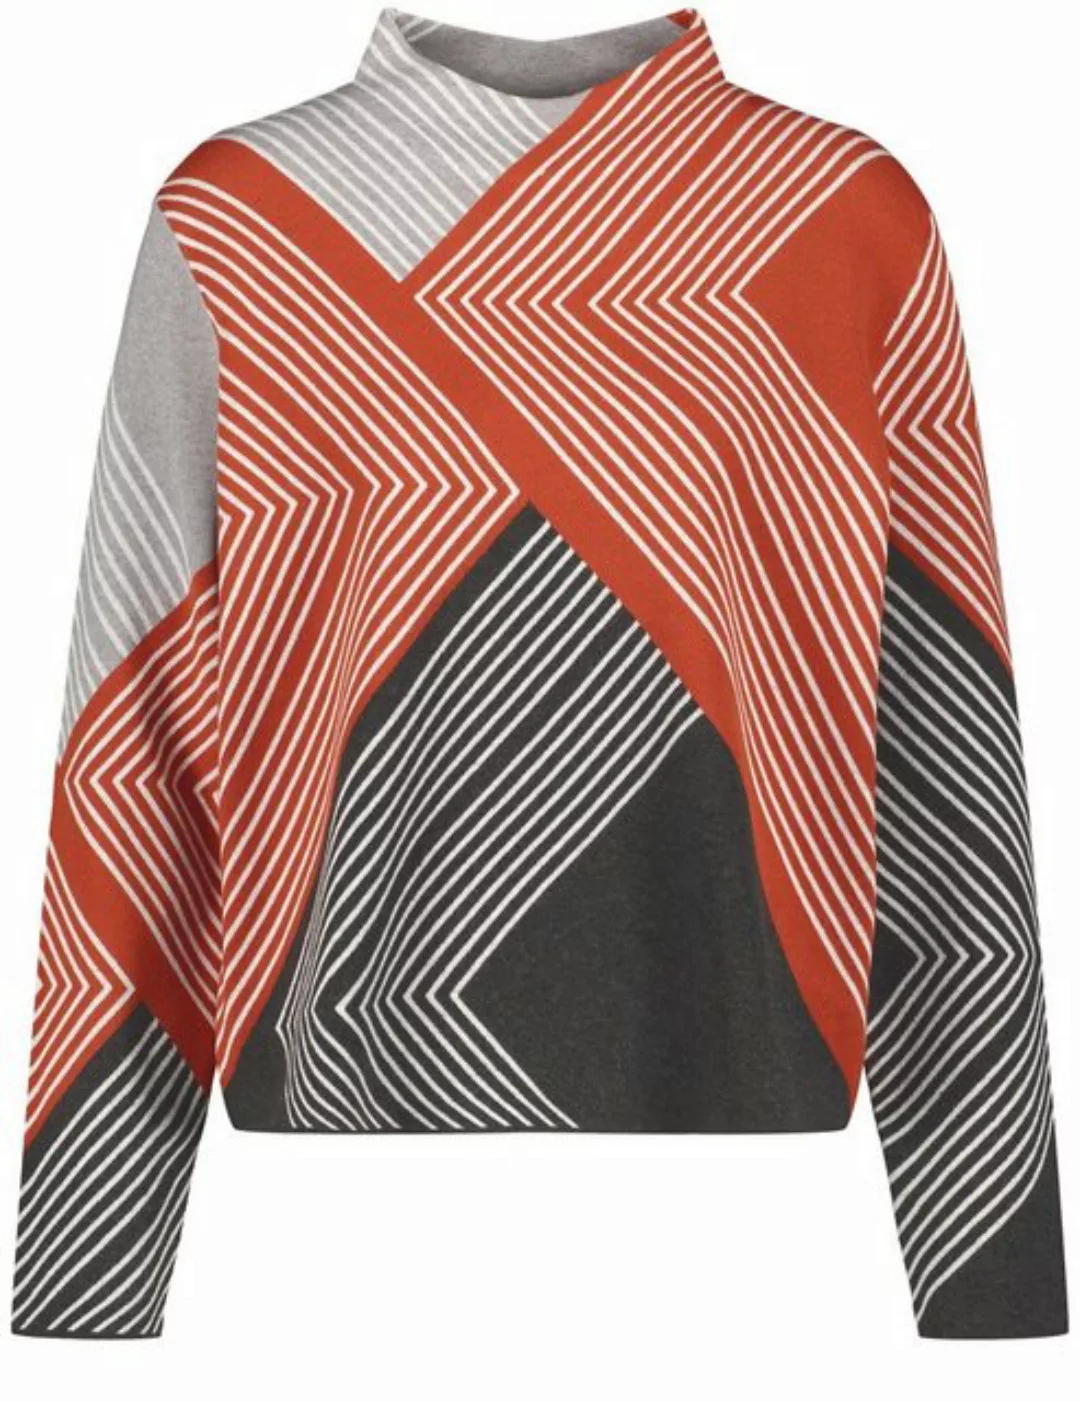 GERRY WEBER Sweatshirt Pullover in Jaquard-Optik mit grafischem Muster günstig online kaufen